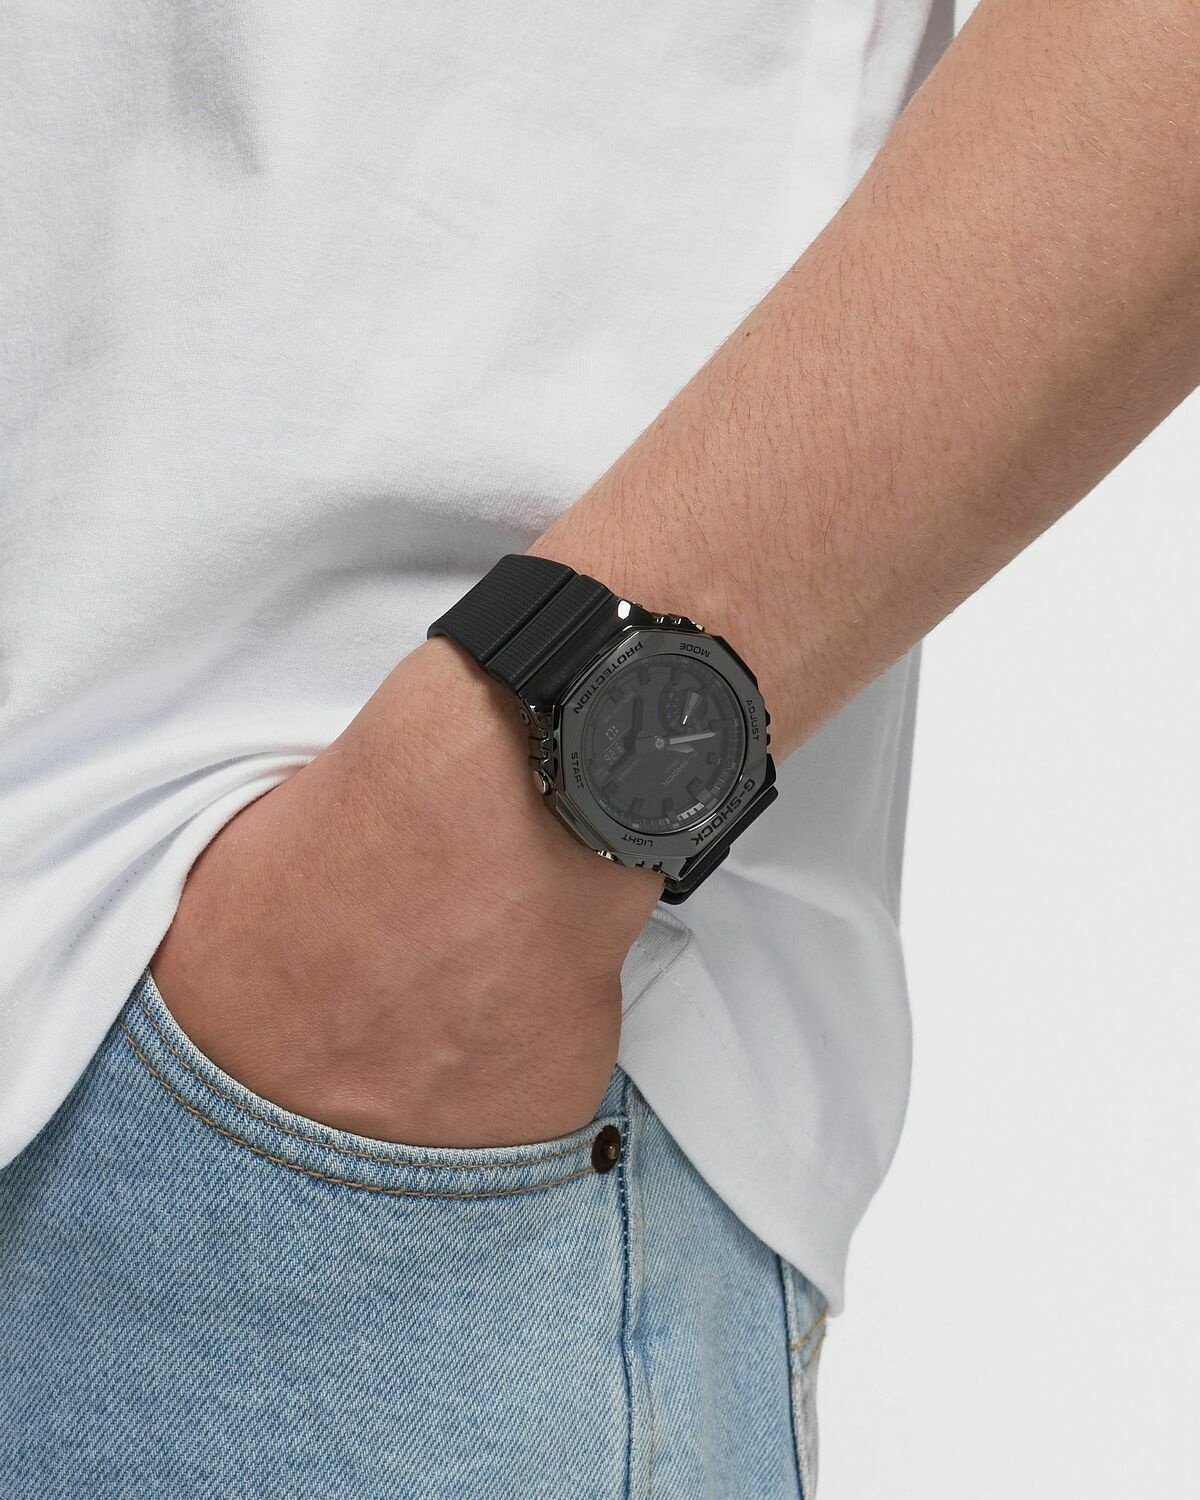 Casio G Shock Gm 2100 Bb 1 Aer Black - Mens - Watches Casio